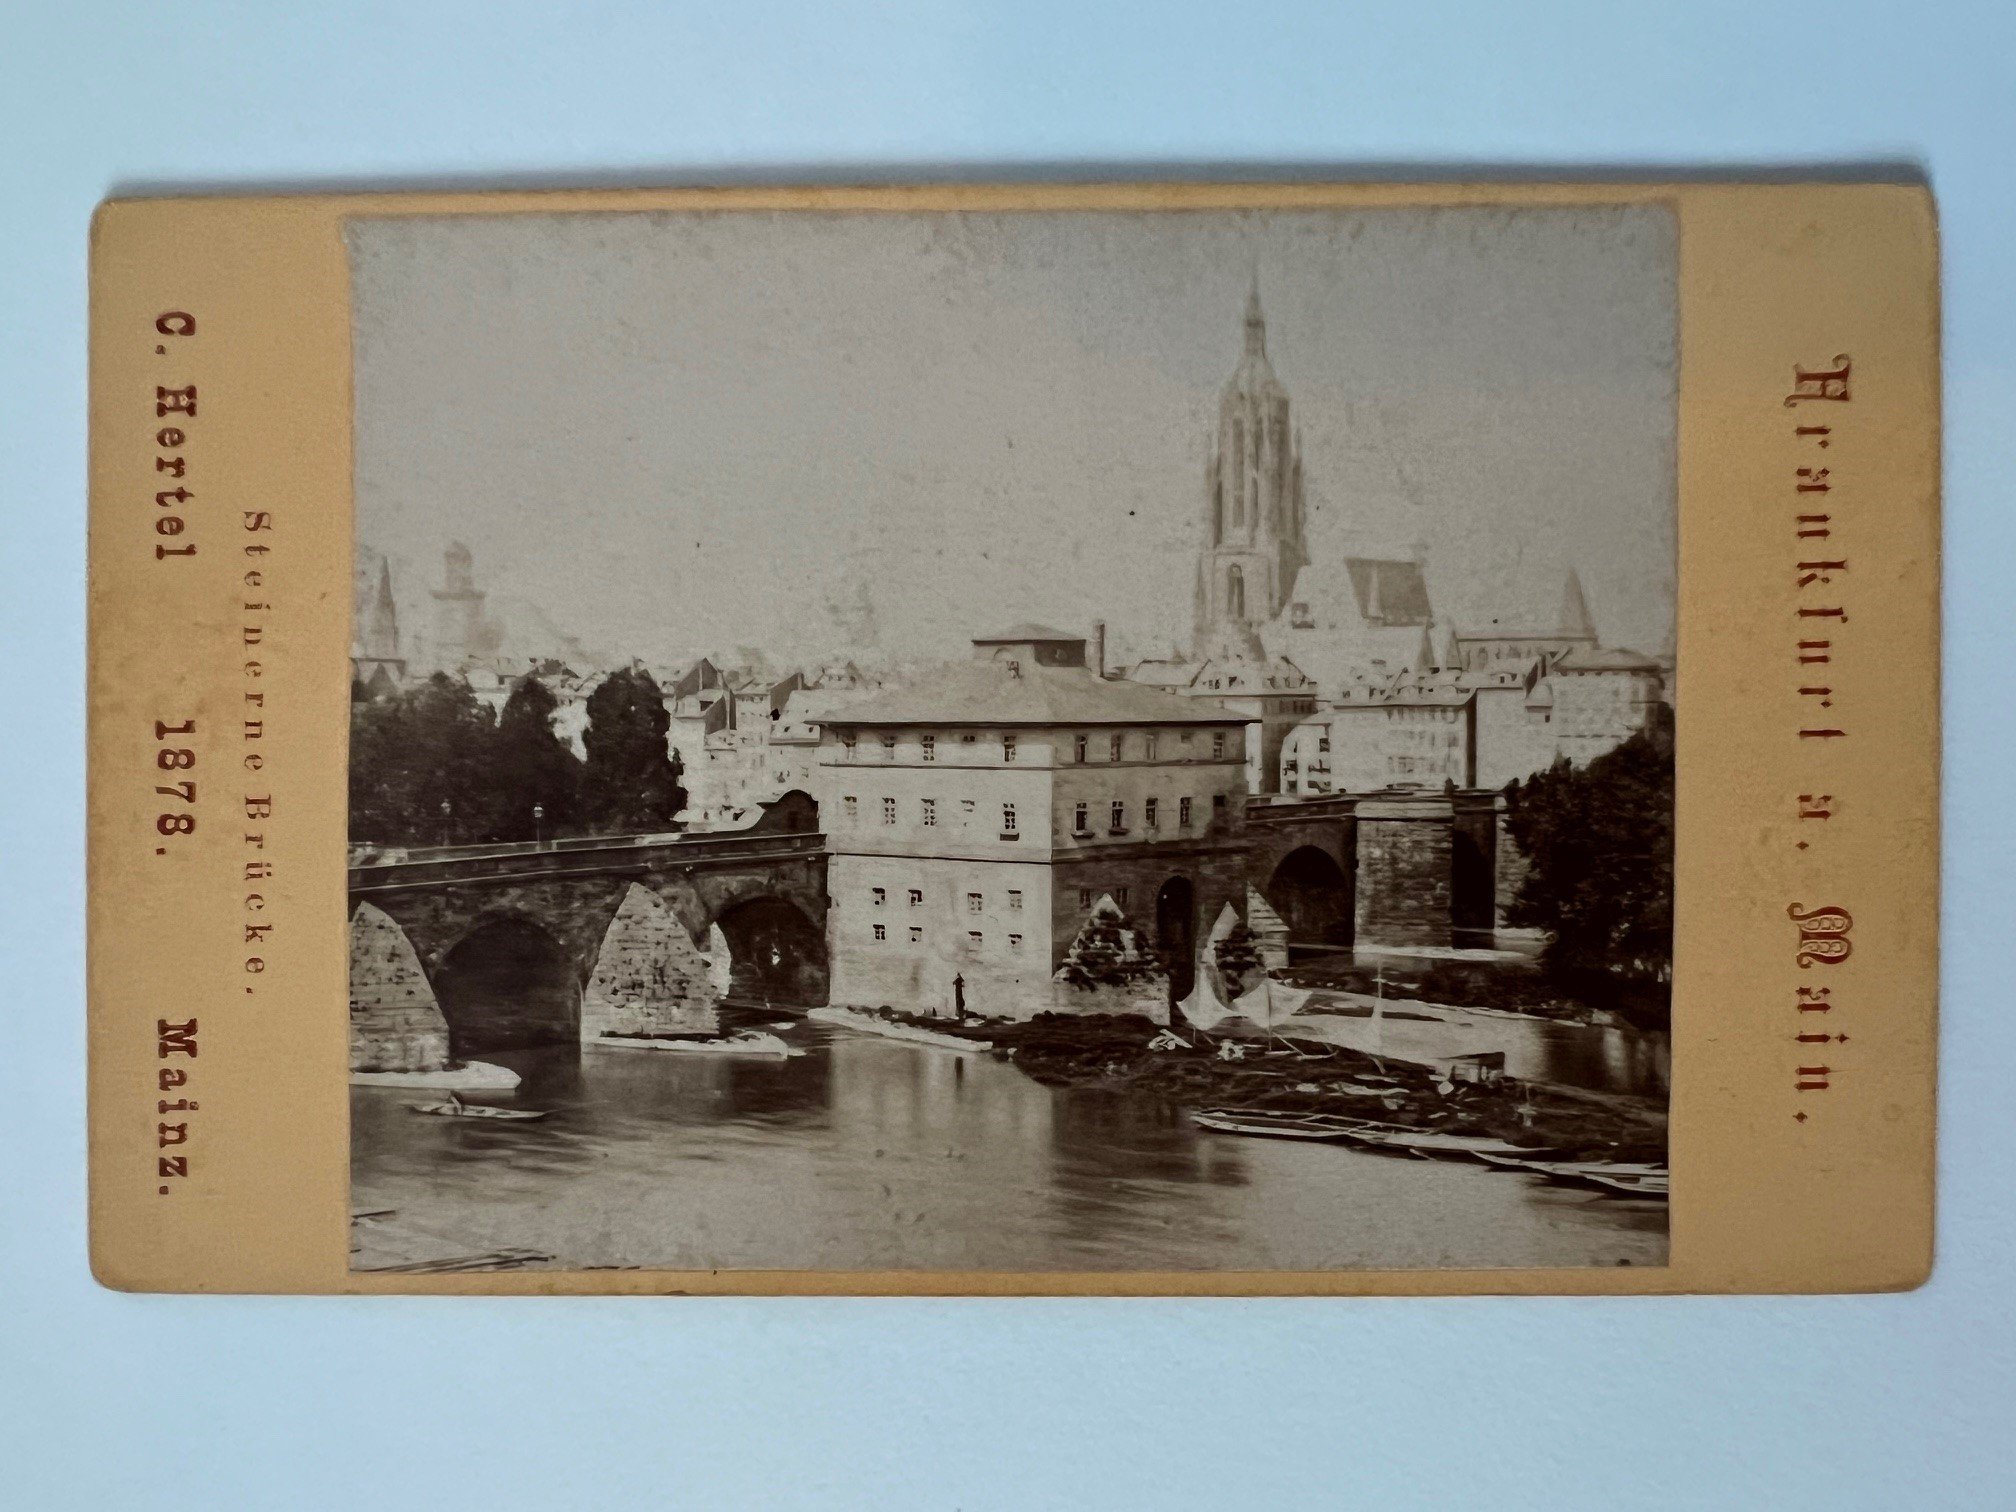 CdV, Carl Hertel, Frankfurt, Steinerne Brücke, 1878. (Taunus-Rhein-Main - Regionalgeschichtliche Sammlung Dr. Stefan Naas CC BY-NC-SA)